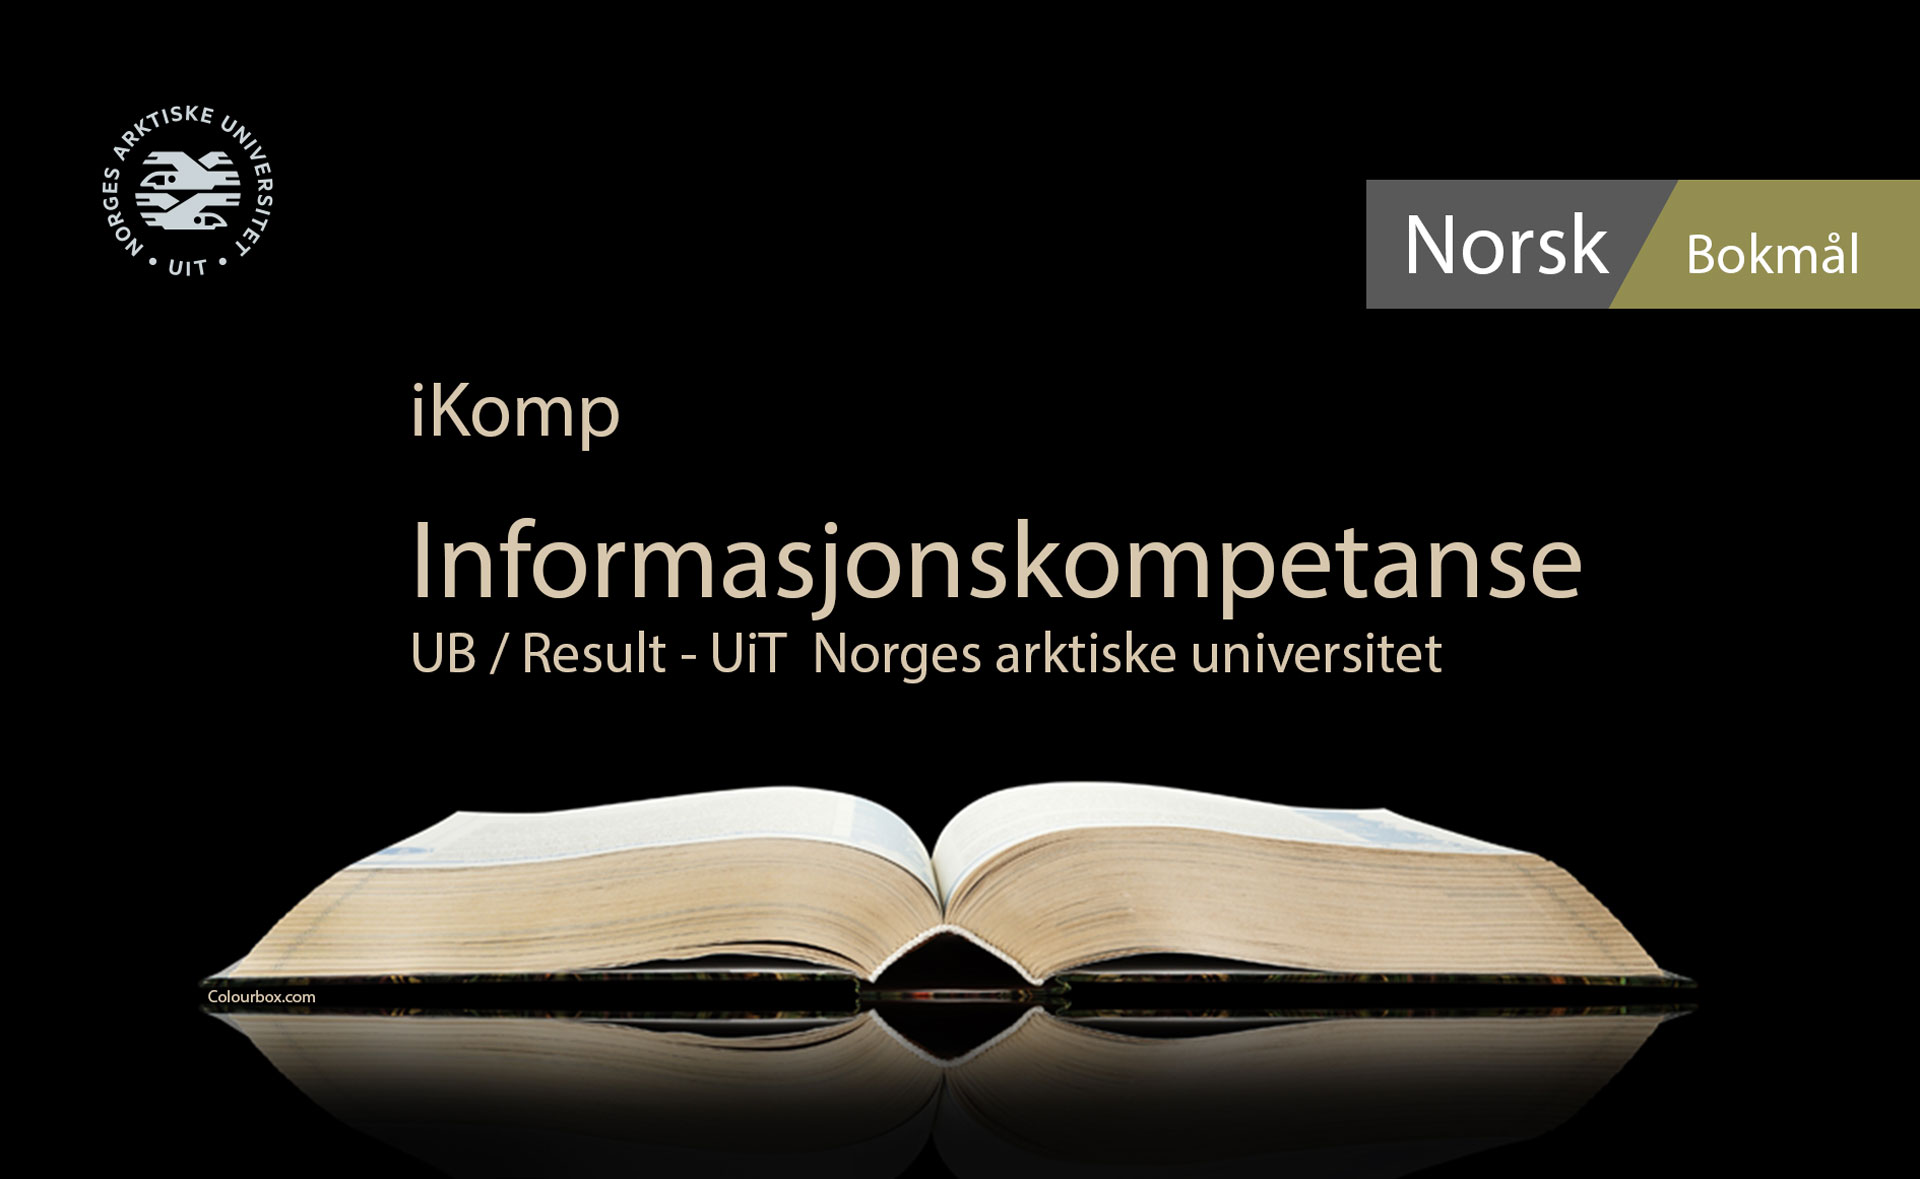 Informasjonskompetanse iKomp Norsk Bokmål